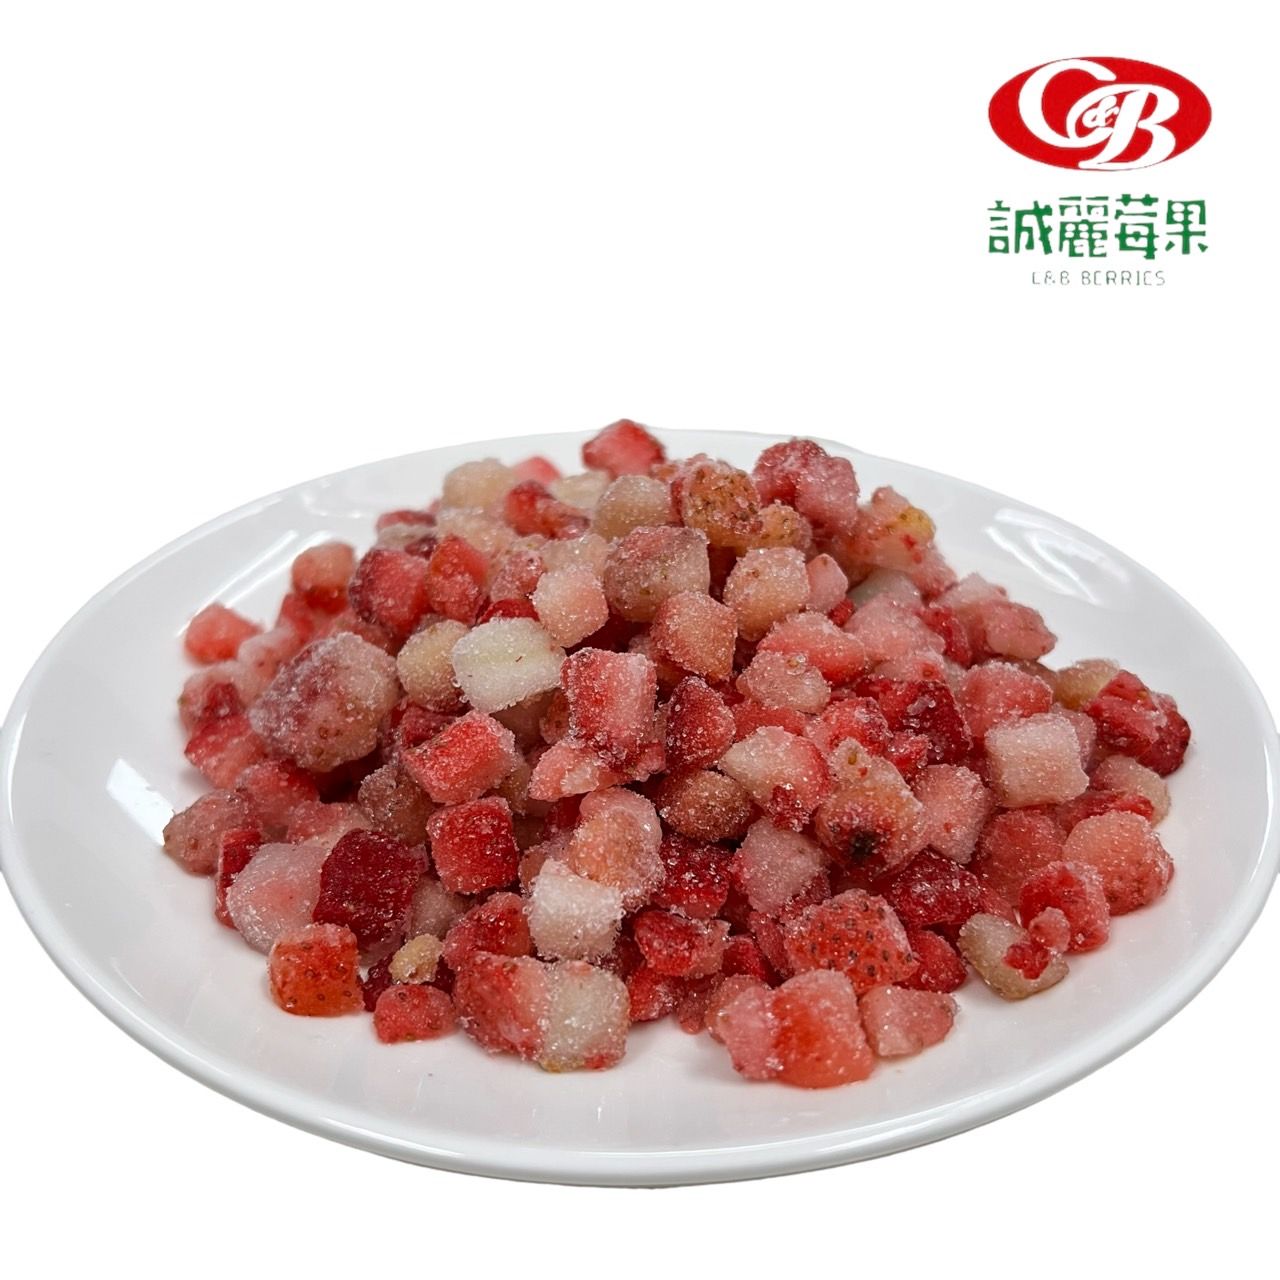 冷凍台灣草莓切丁